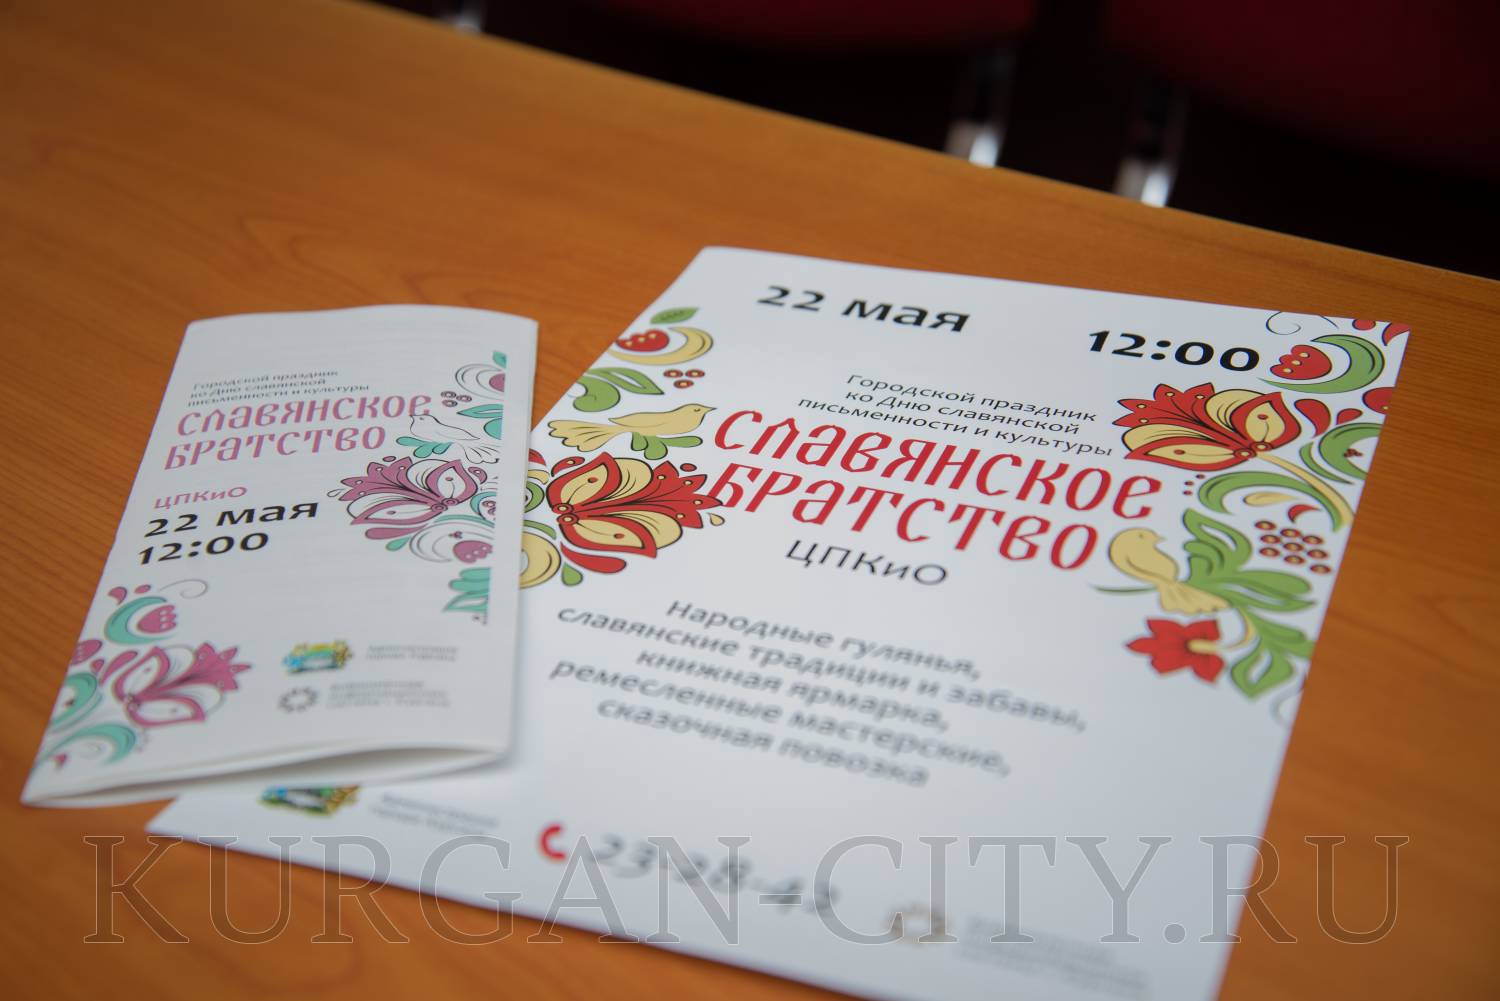 В День славянской письменности и культуры в Кургане состоится праздник «Славянское братство»